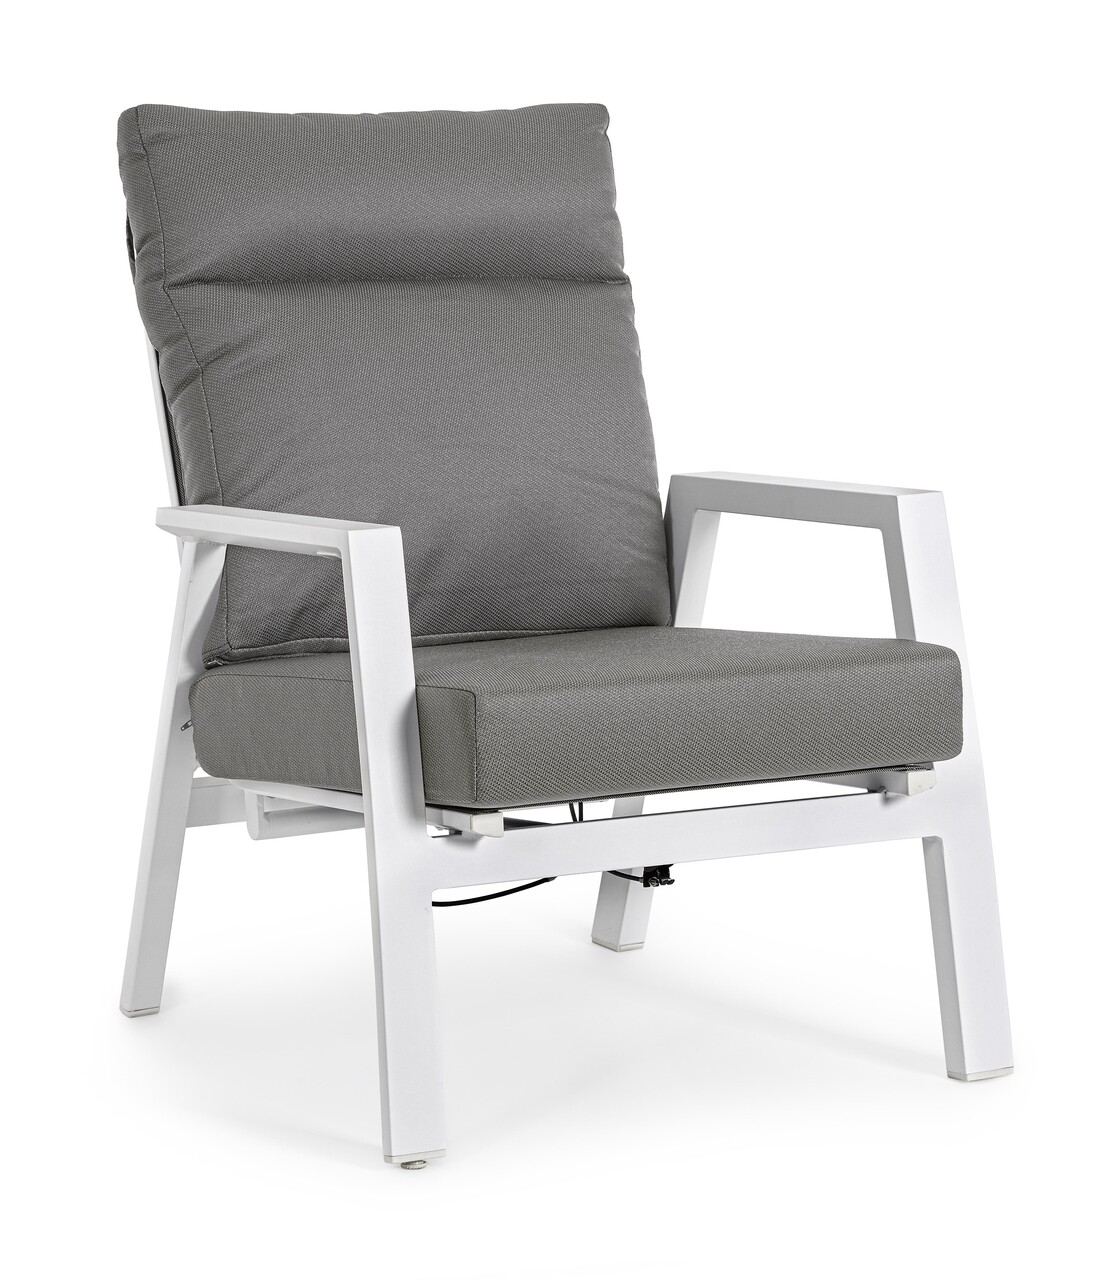 Kledi Kerti/terasz fotel, Bizzotto, 72 x 81 x 98 cm, állítható hátrész, alumínium/textilén 1x1, fehér